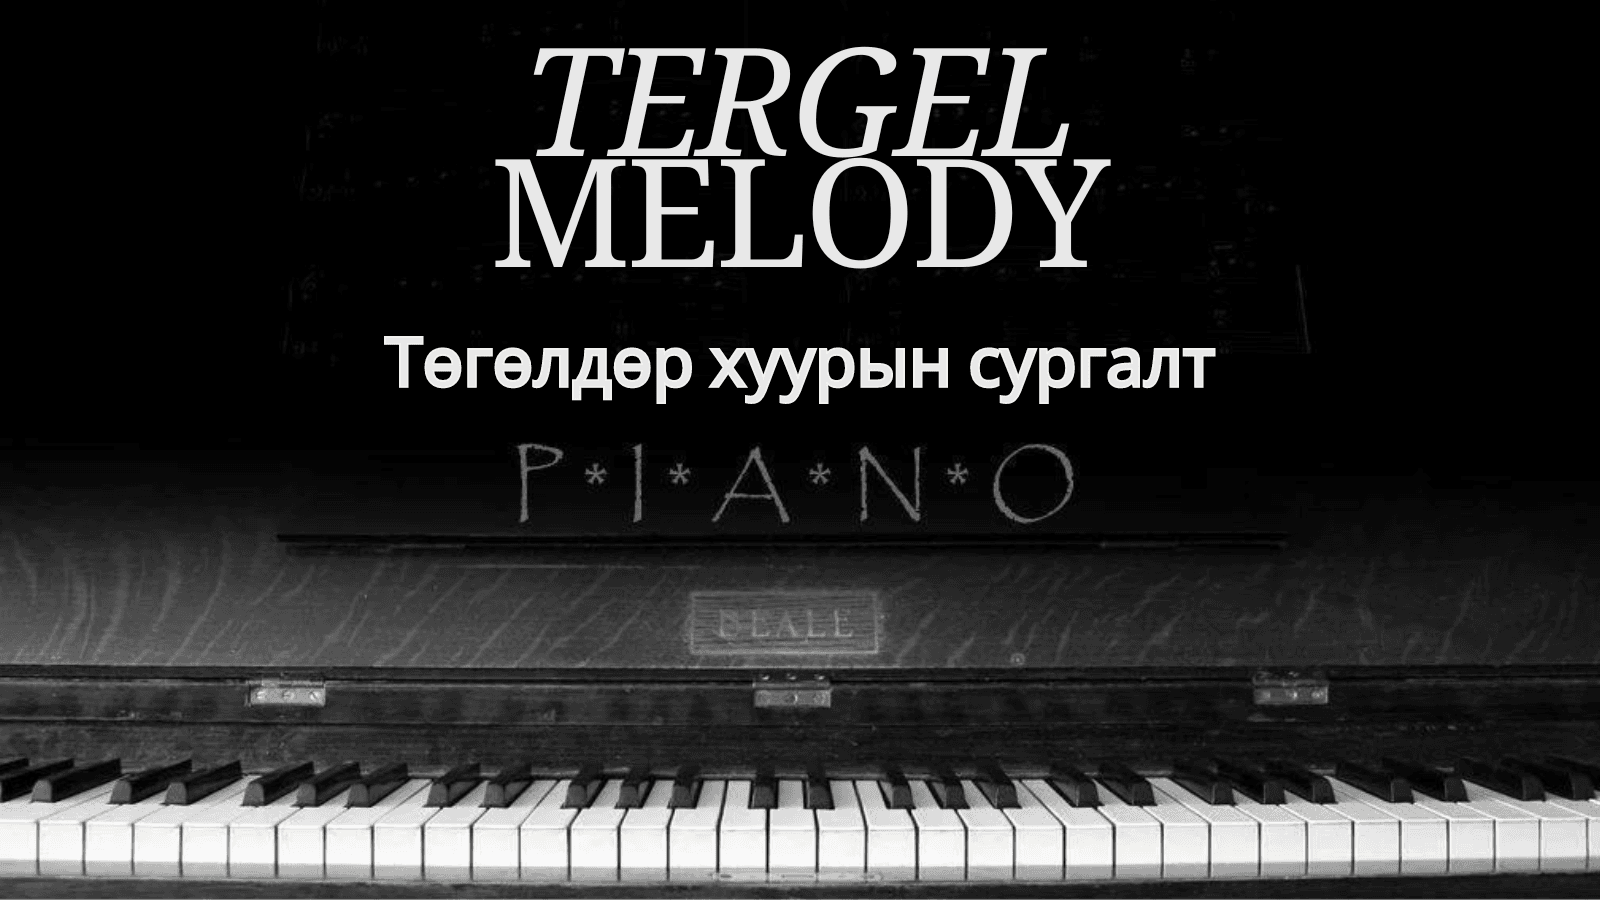 Tergel Melody /Төгөлдөр хуурын ганцаарчилсан сургалт/